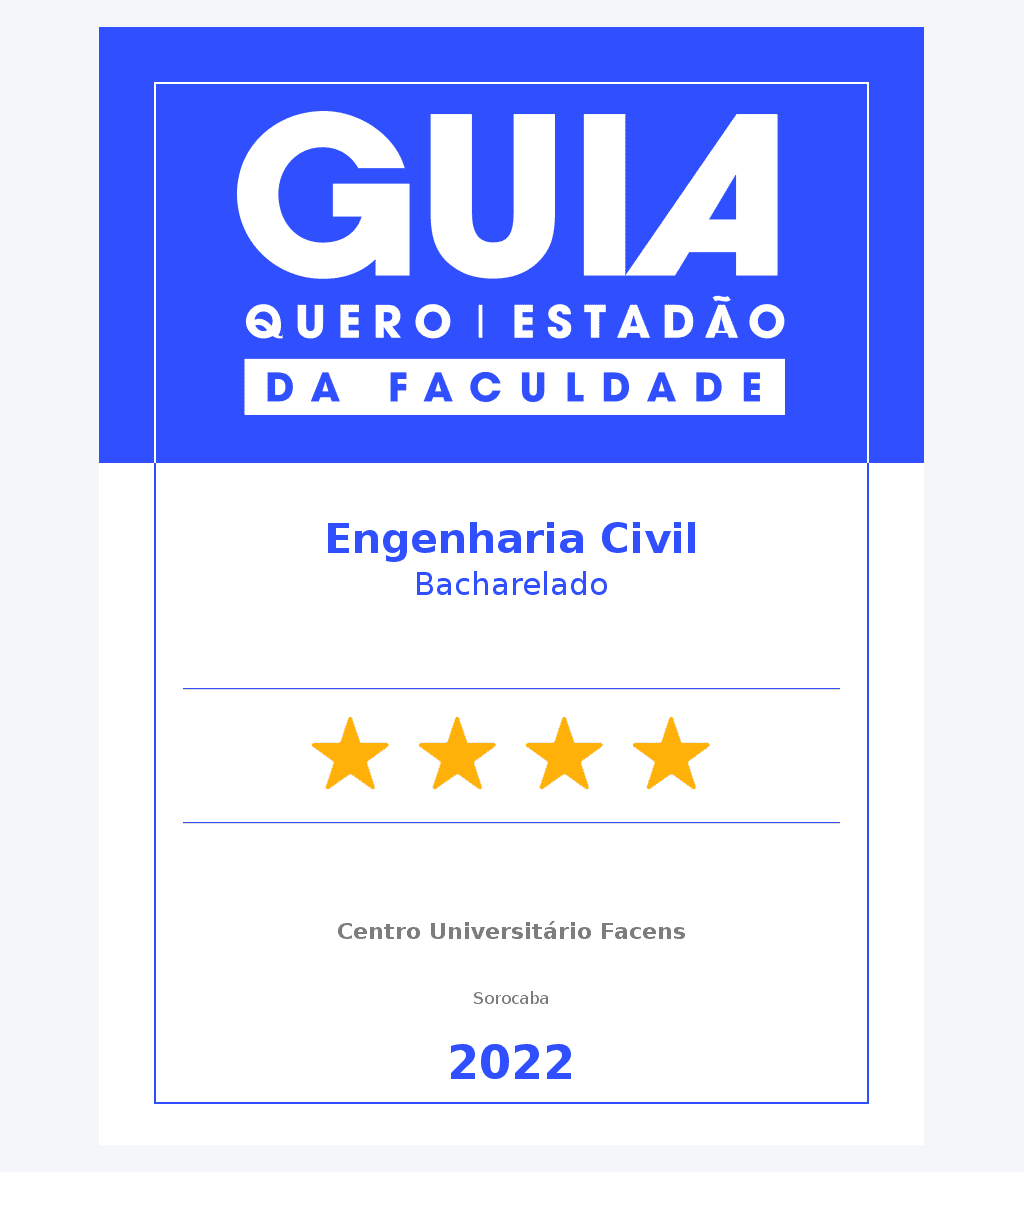 Engenharia Civil - 4 Estrelas Guia do Estudante 2022